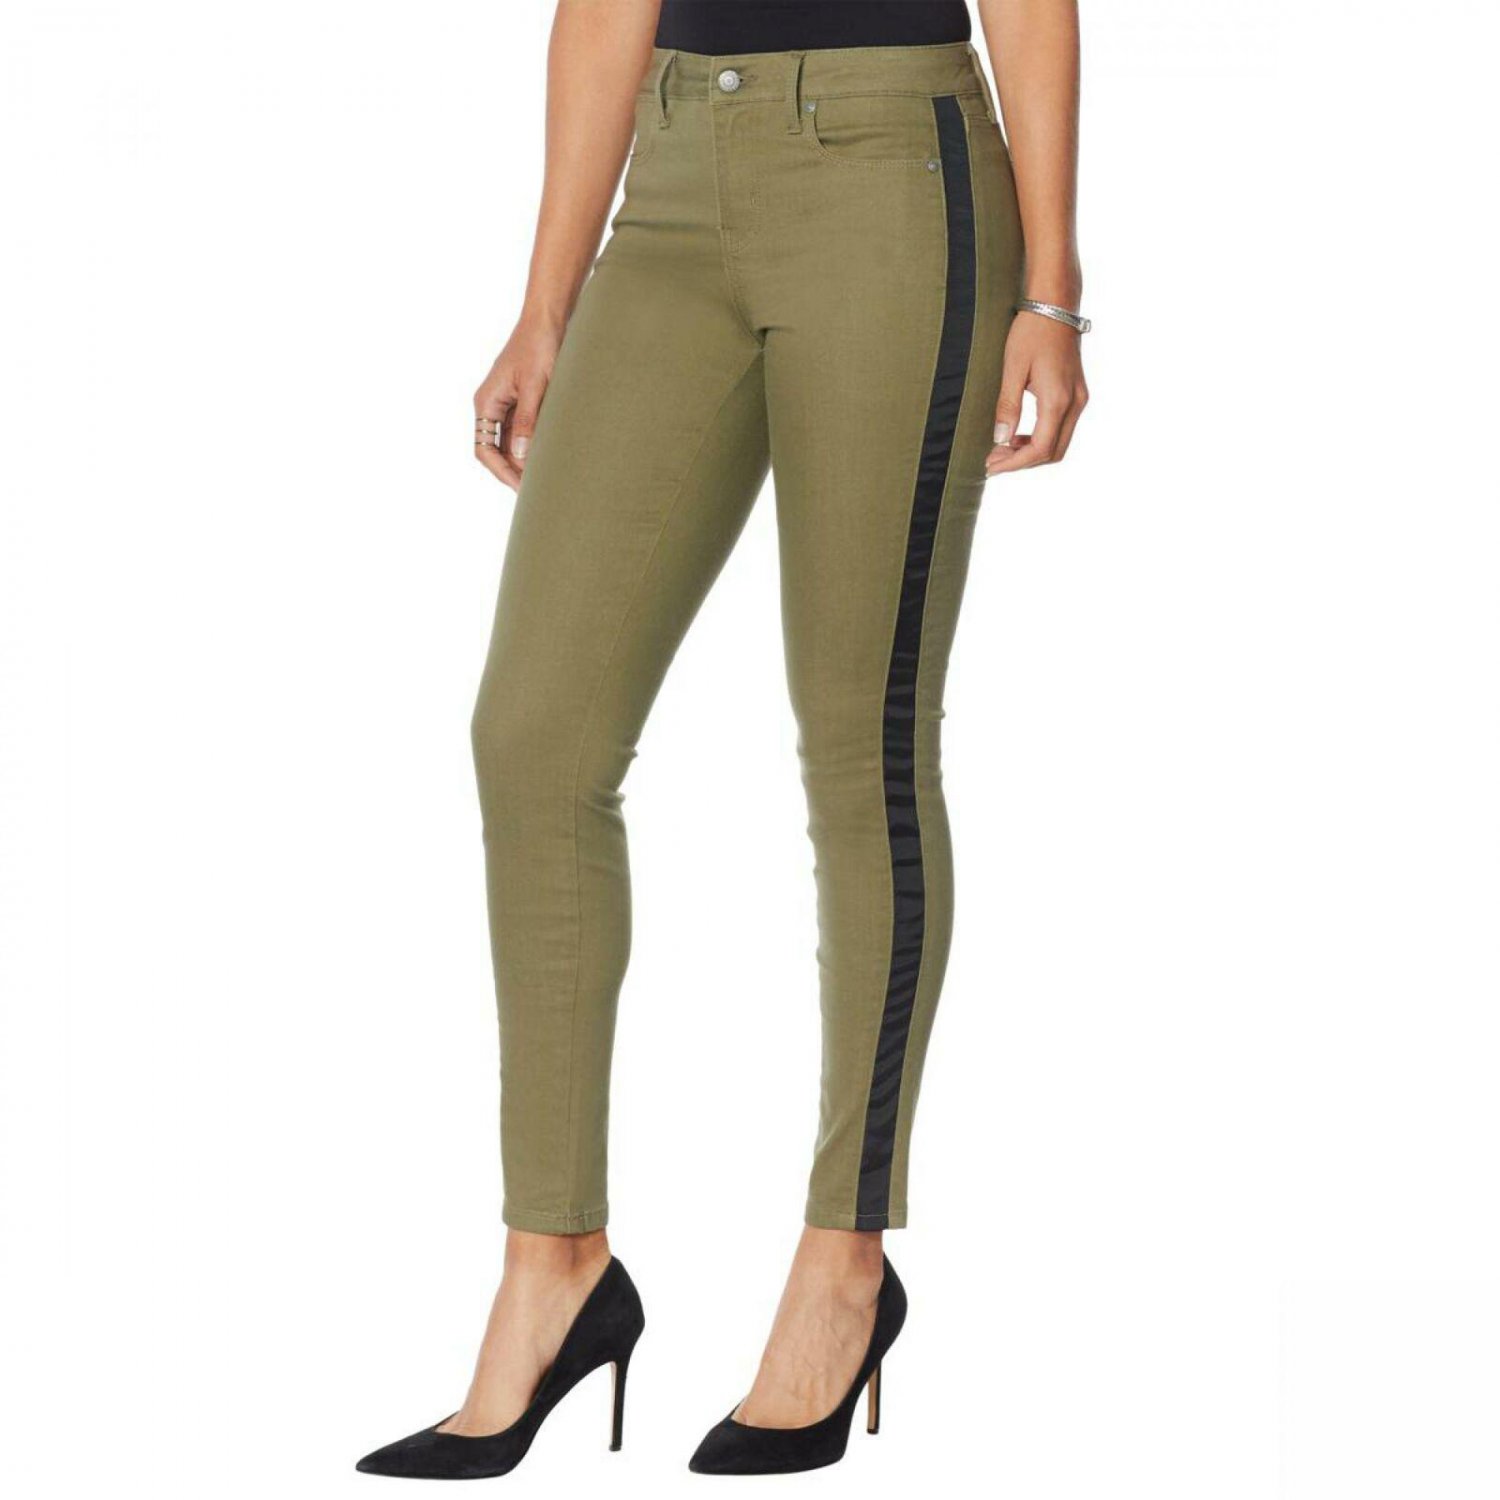 Colleen Lopez Women's Side Stripe Skinny Jeans 10 Olive Green